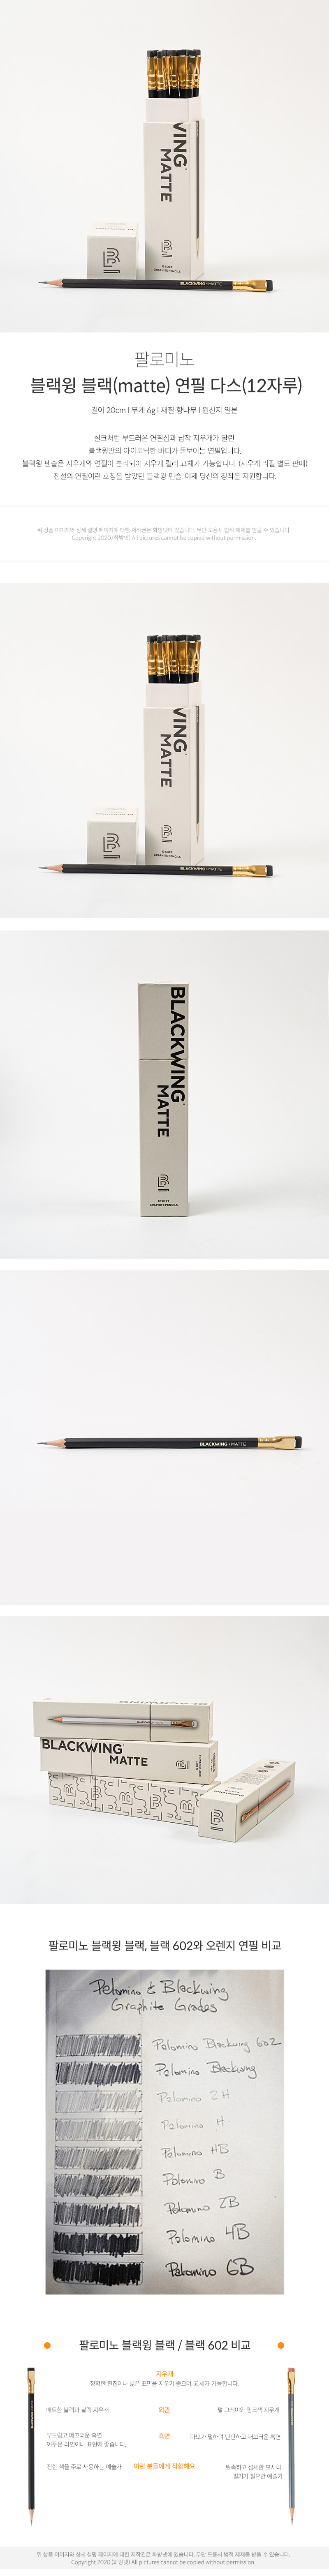 블랙윙 블랙 연필